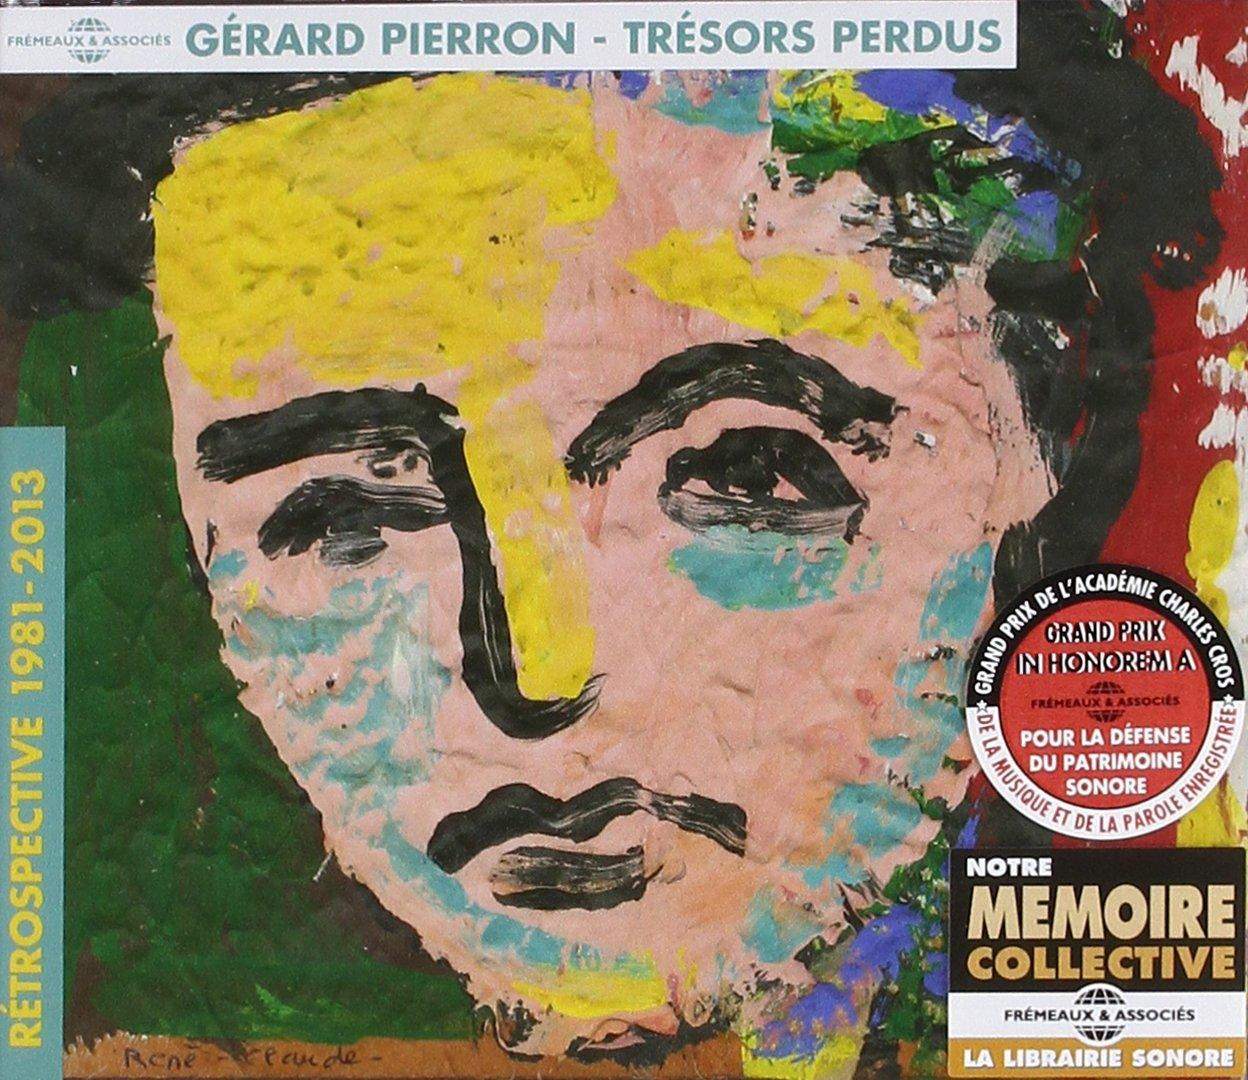 Perdus-Rétrospective Trésors Gerard - 1981-2013 Pierron (CD) -